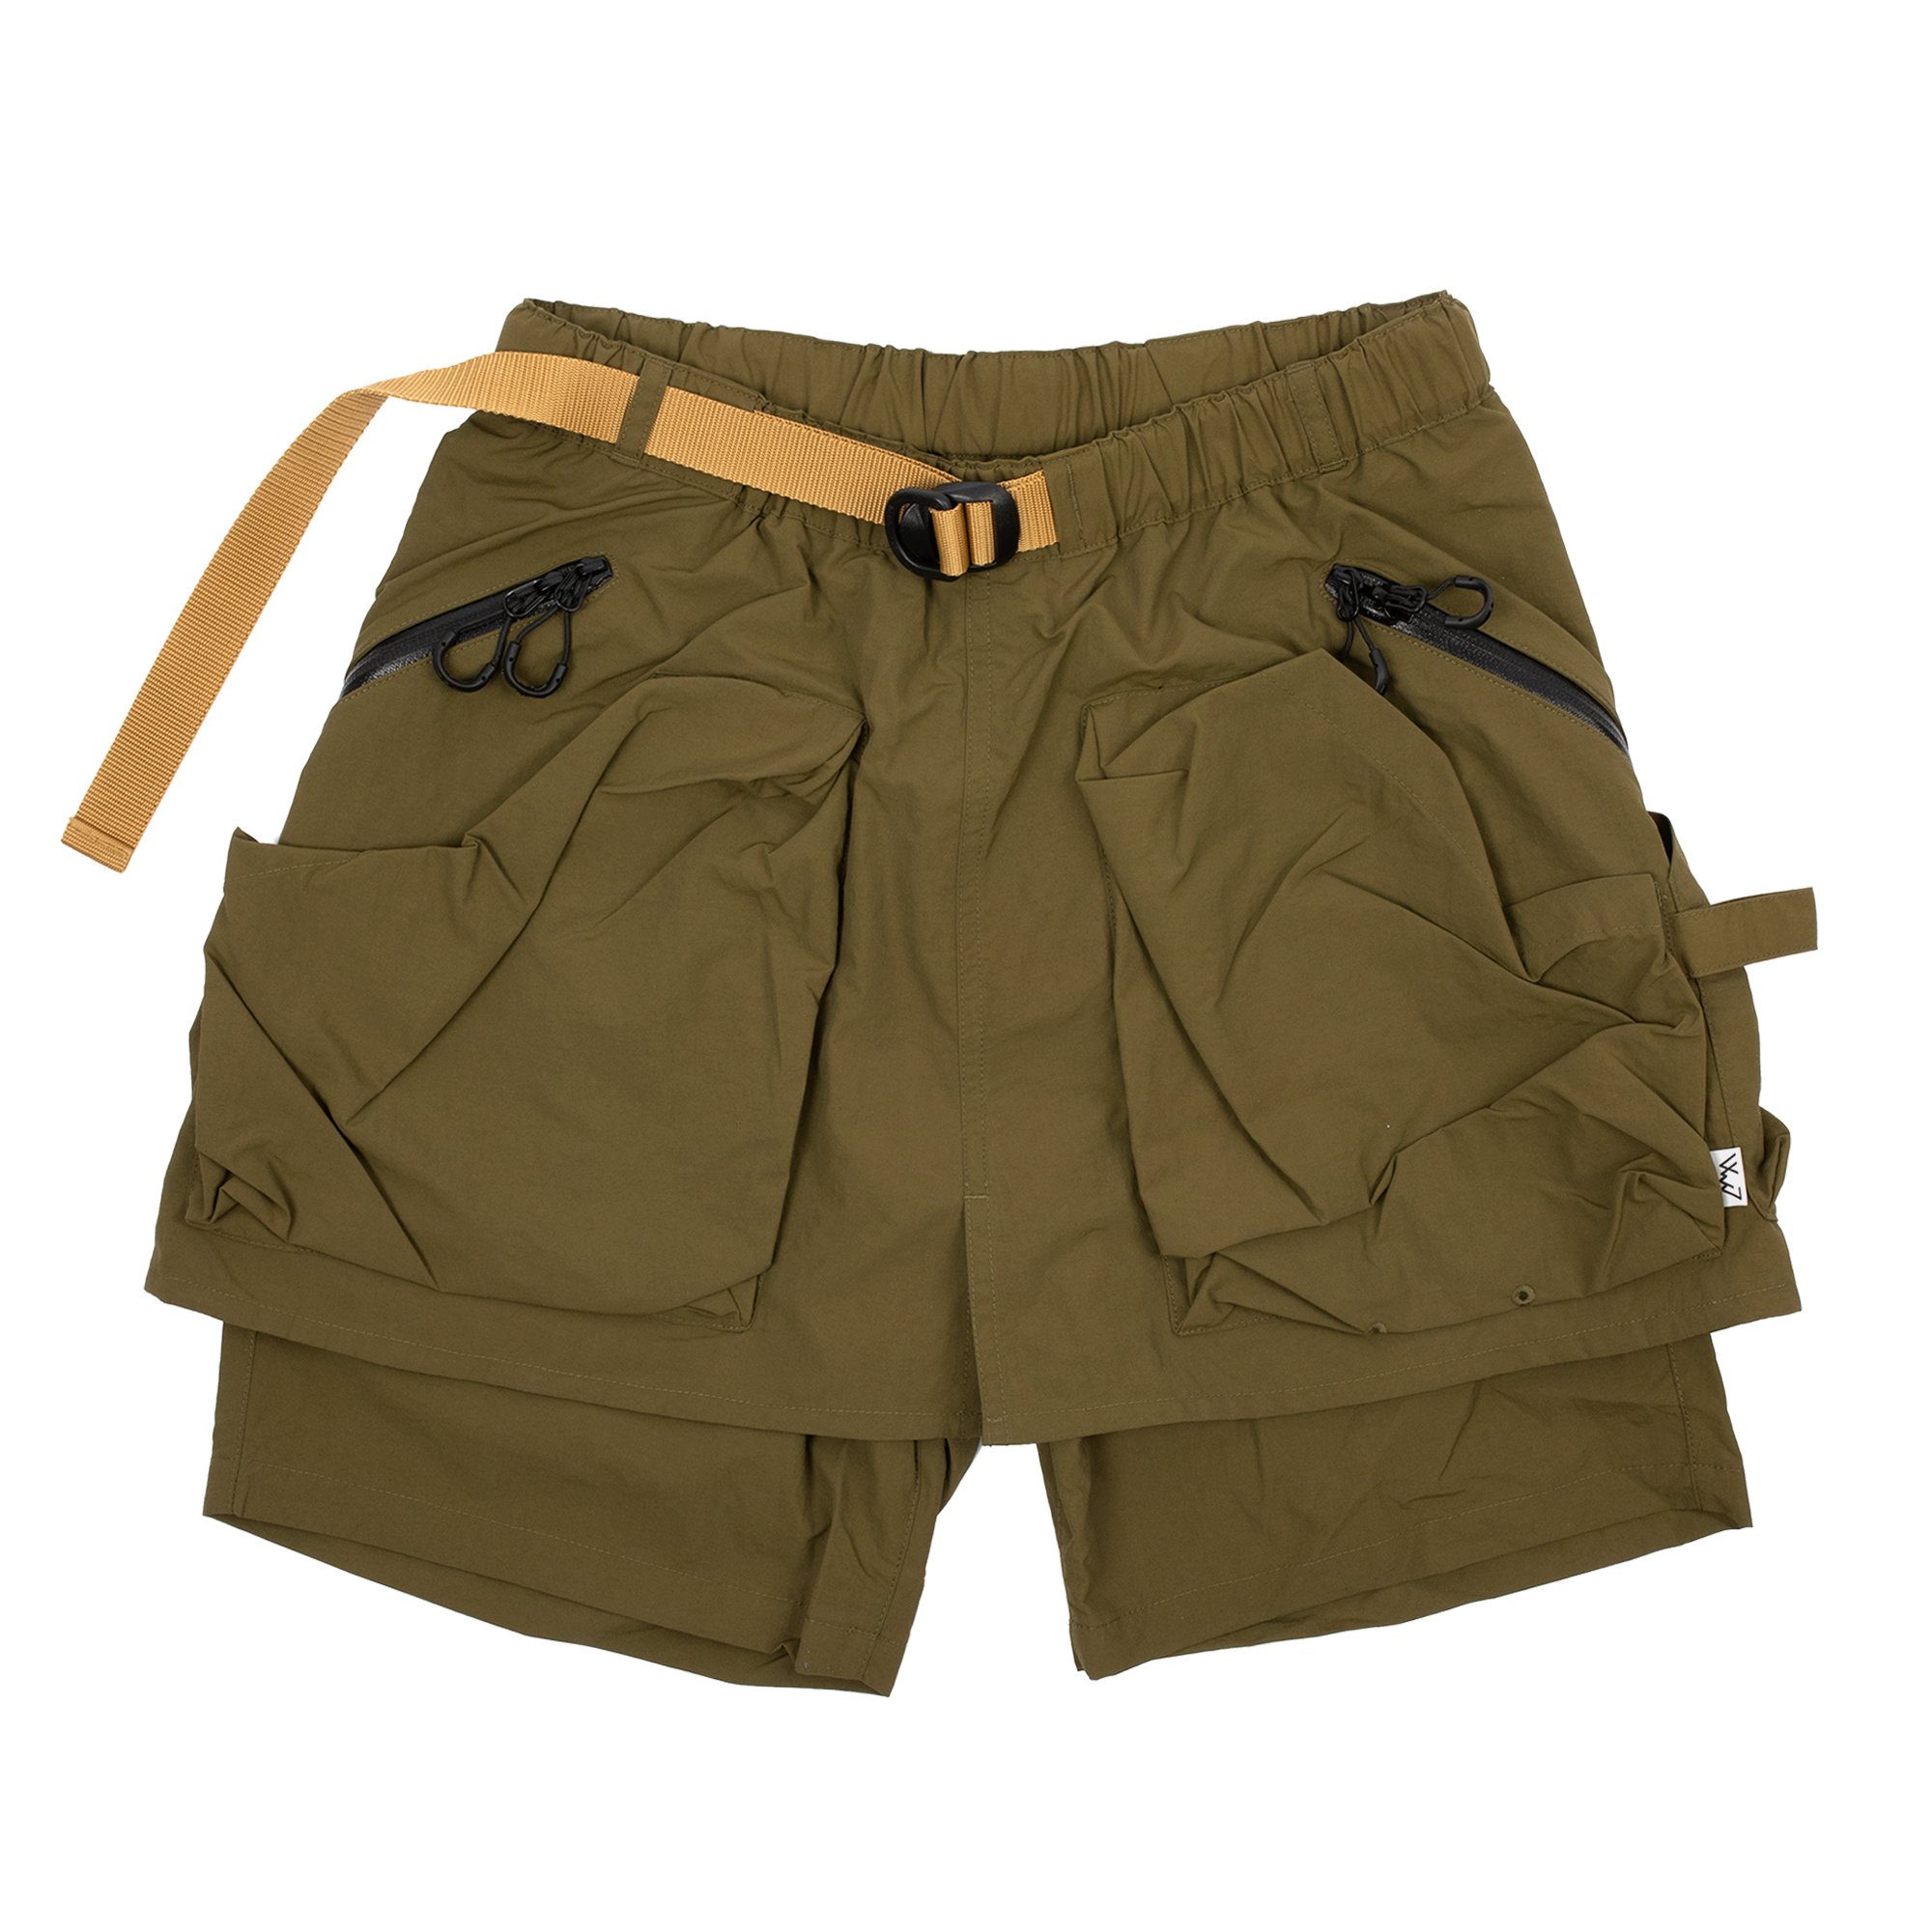 Comfy Outdoor Garment - Kiltic Shorts (Coyote)